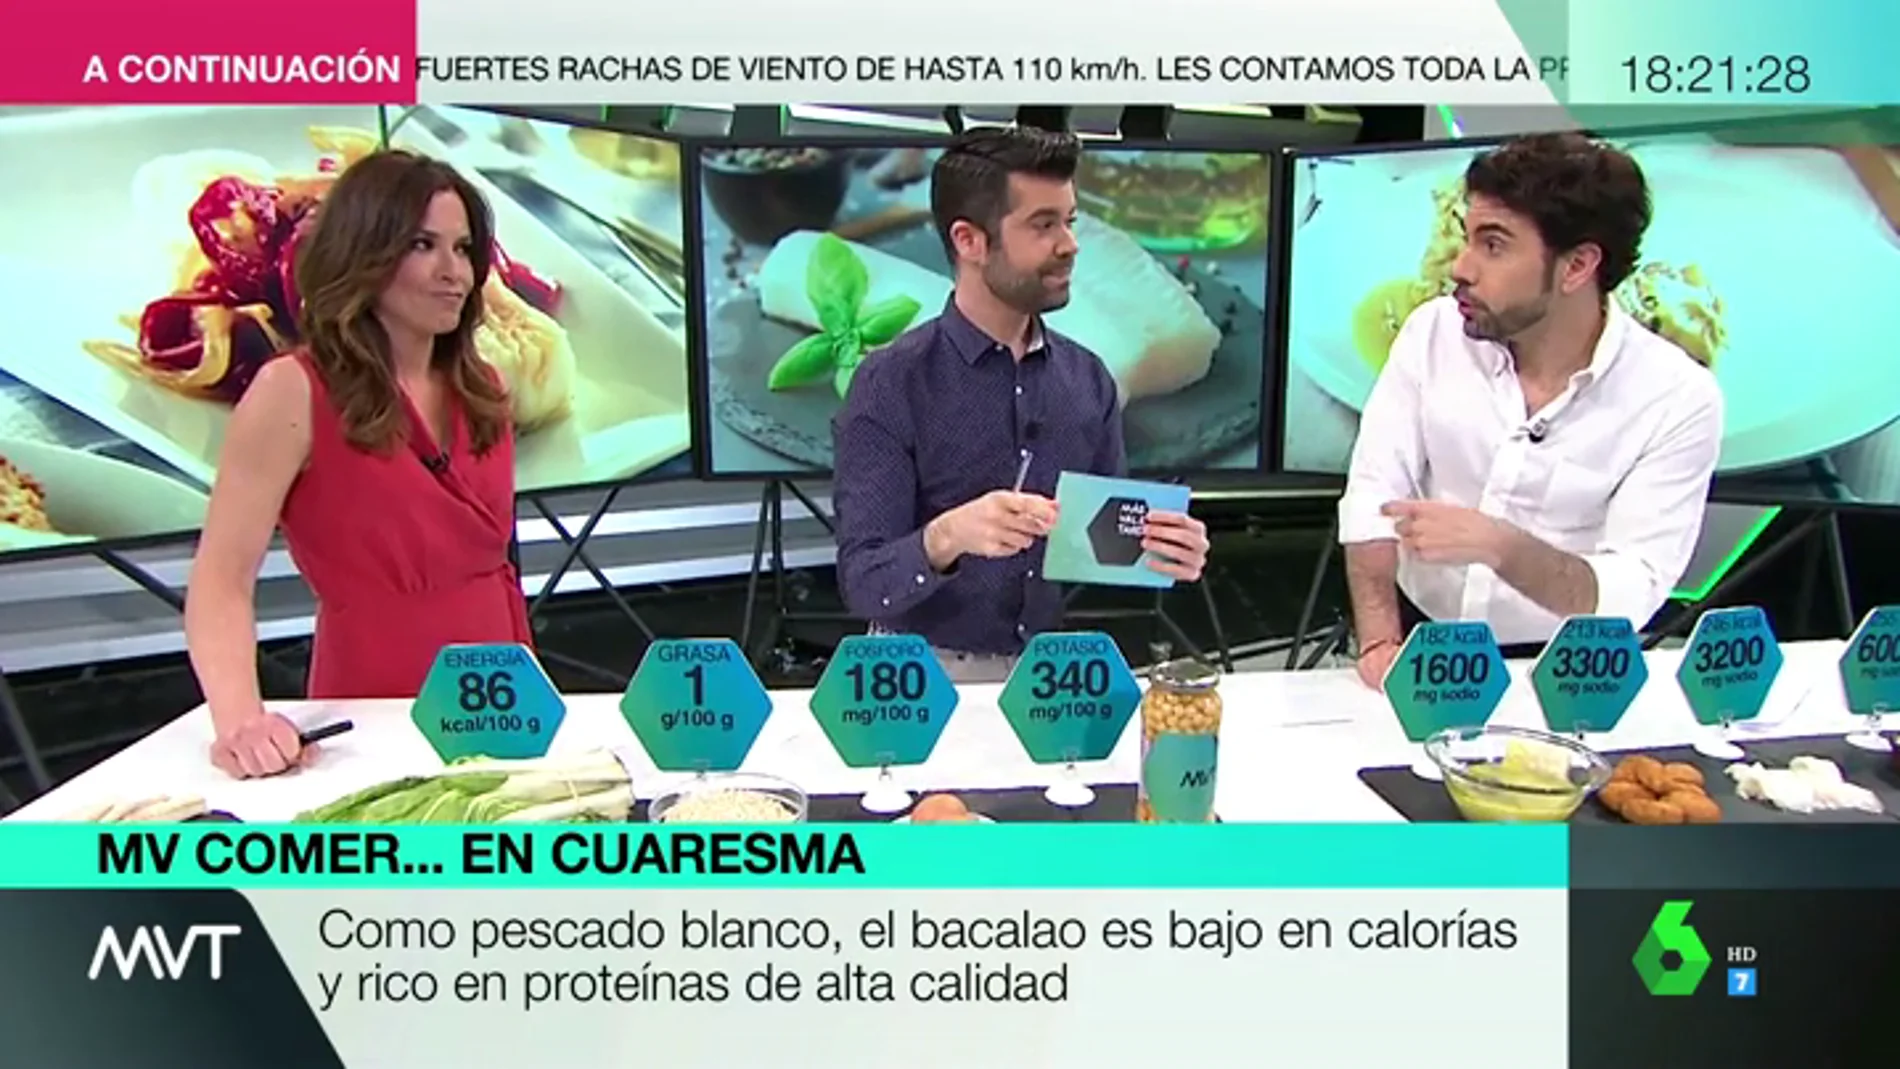 El consumo de bacalao crece en España durante la Cuaresma: te explicamos sus propiedades y cómo cocinarlo